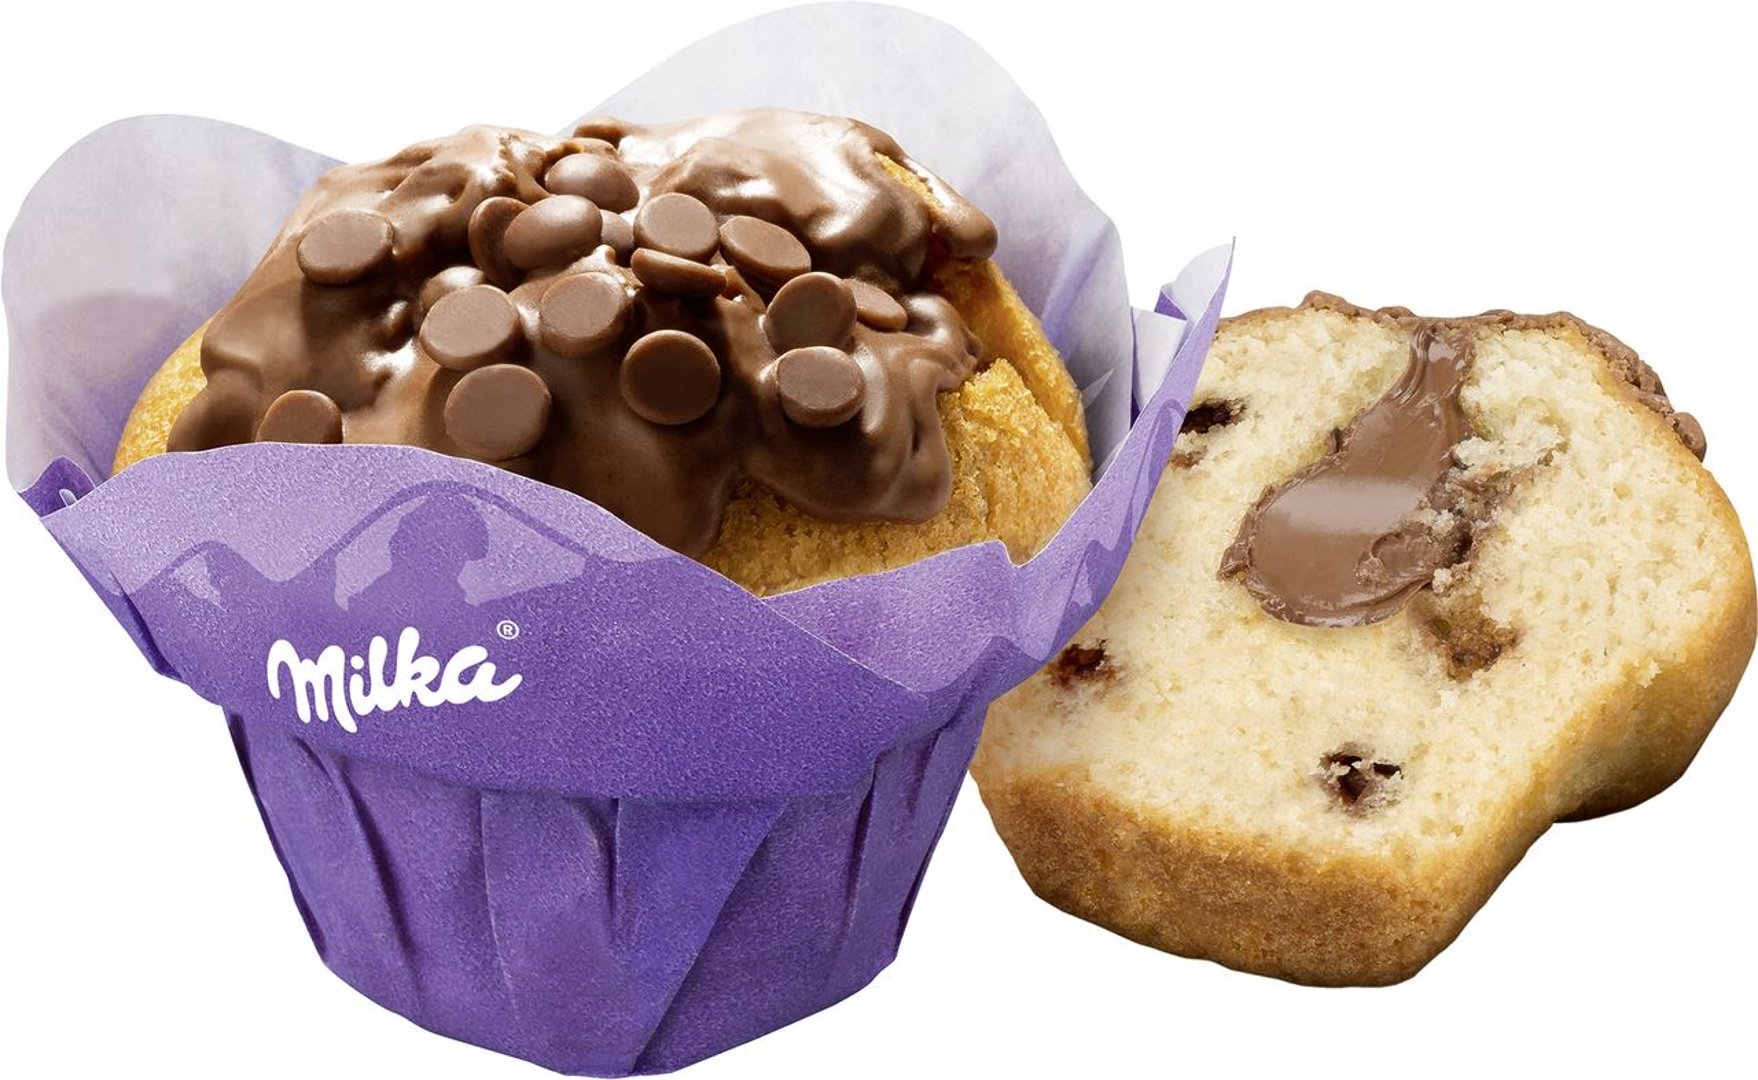 Milka - Muffin gefüllt - 2 Stück à 110 g Packung